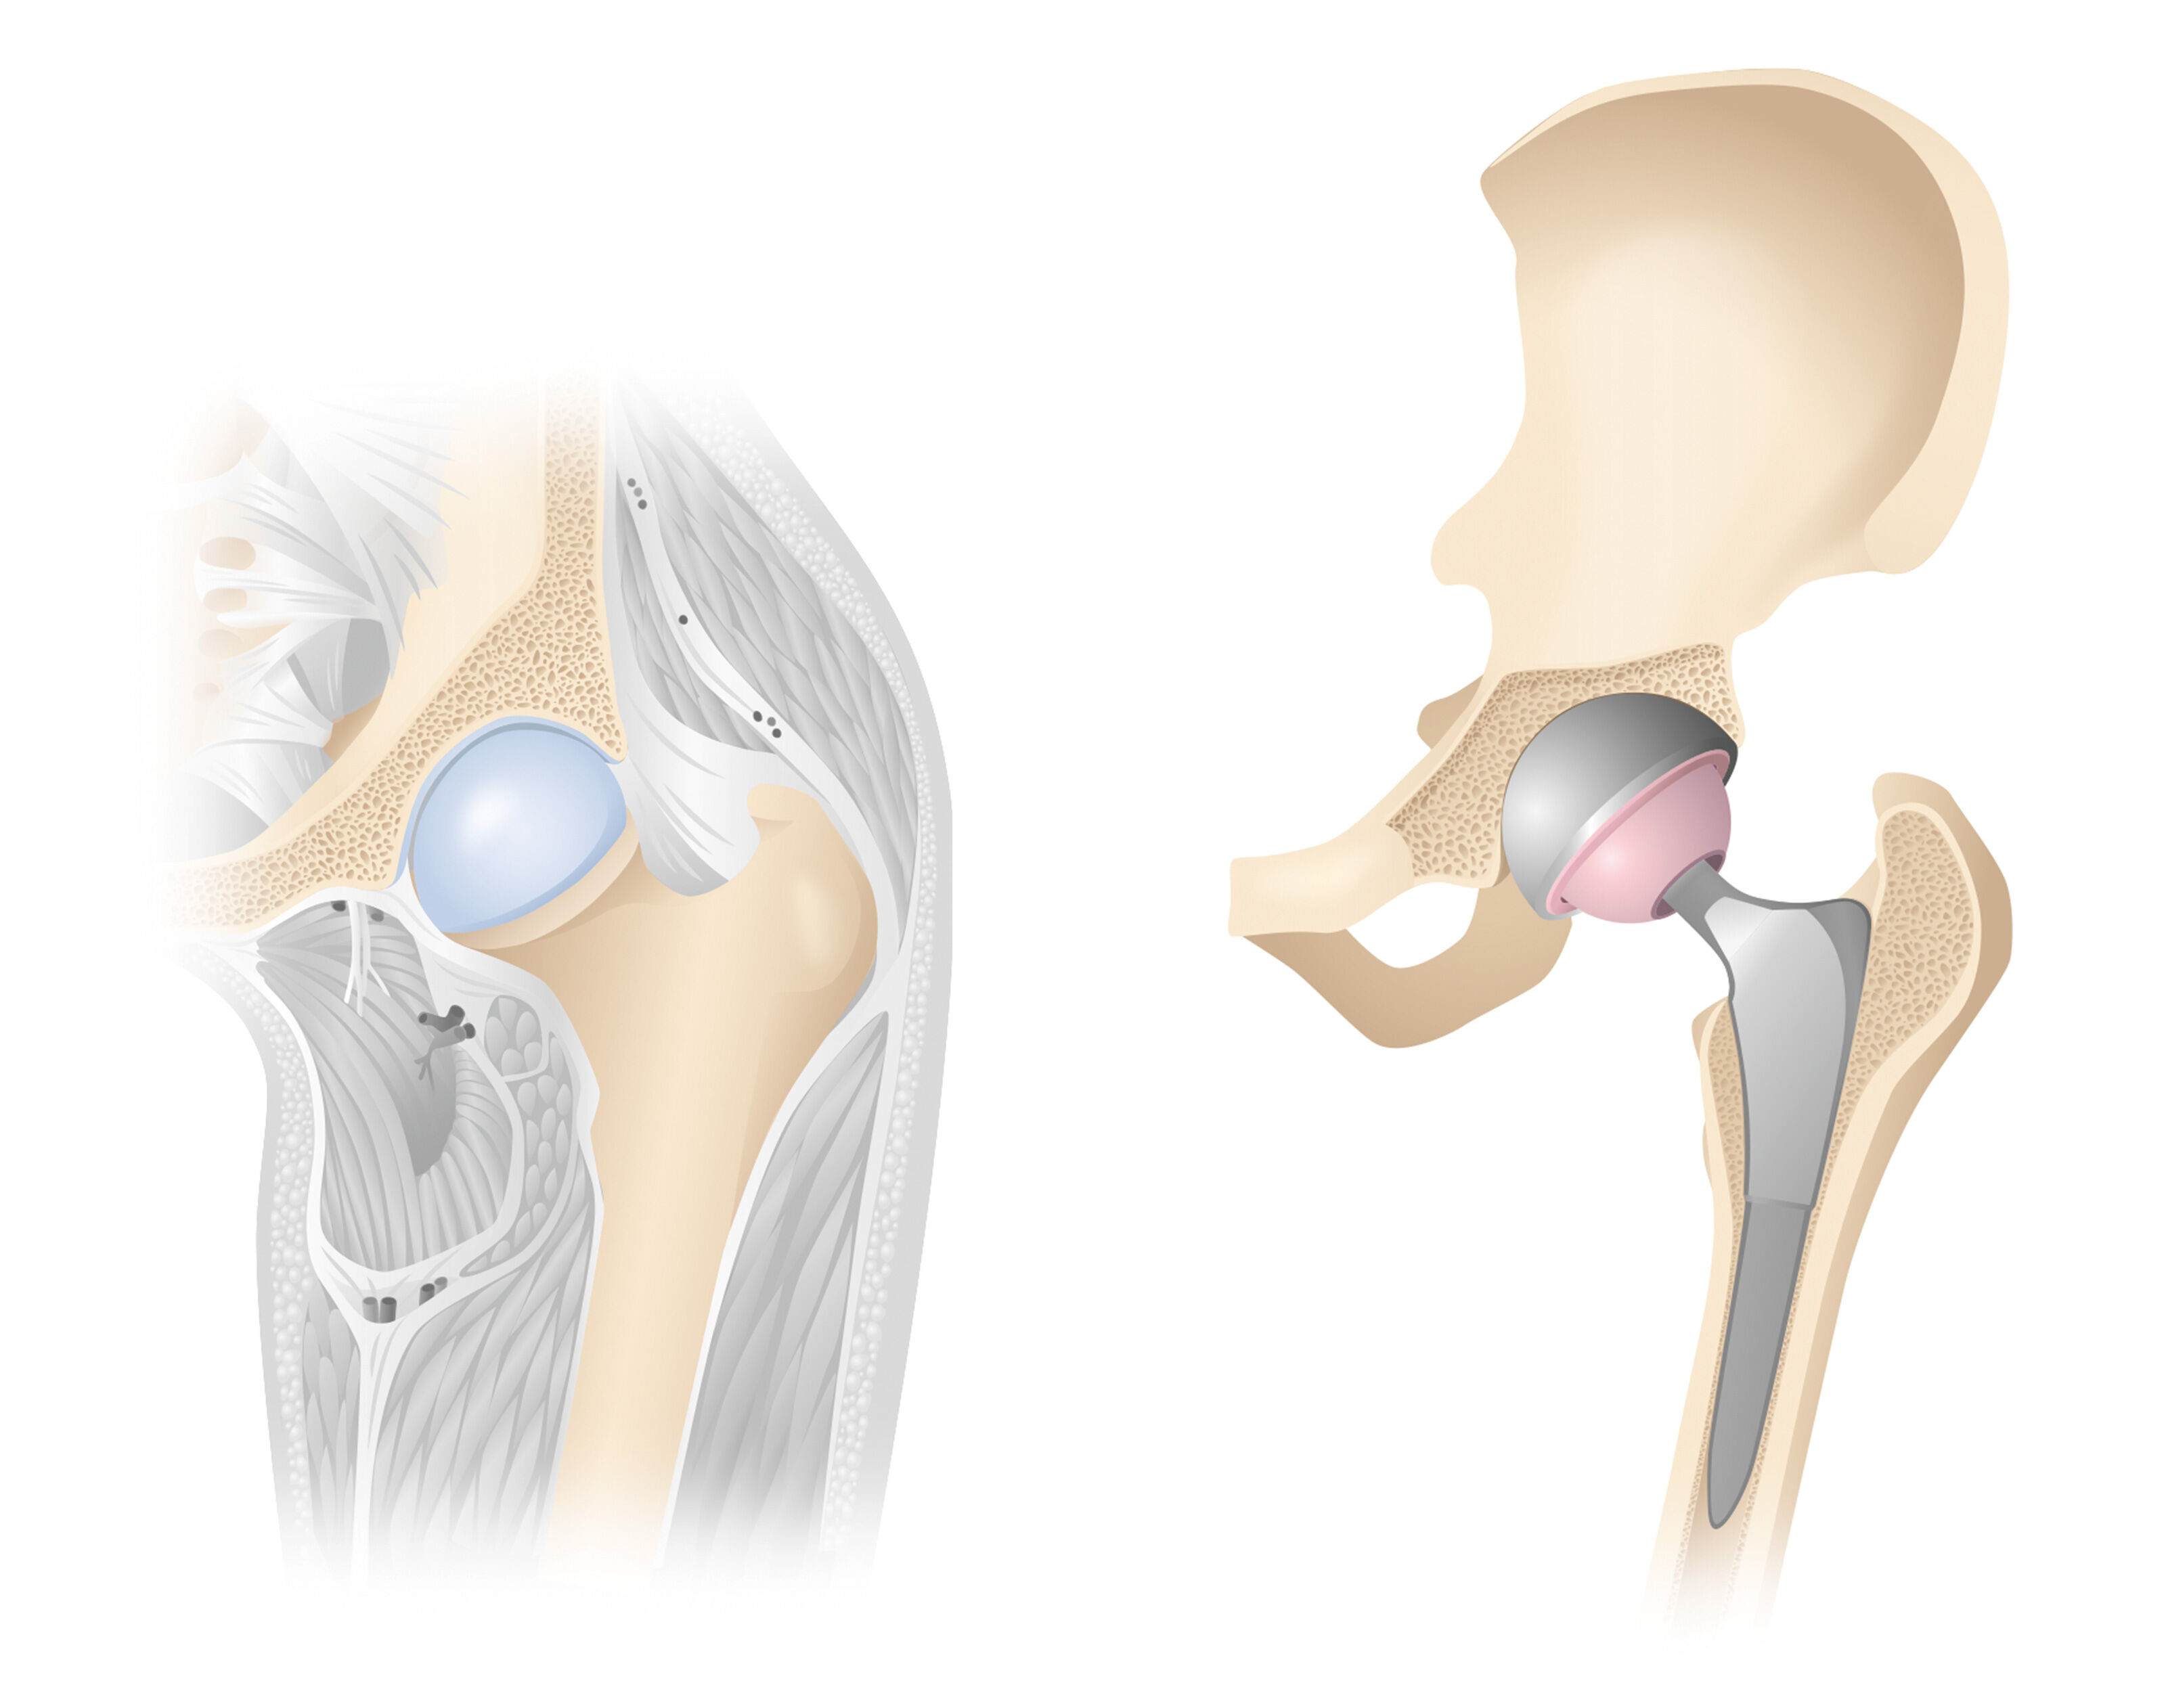 oculus-illustration-medizin-gelenkchirurgie-huefte-prothese